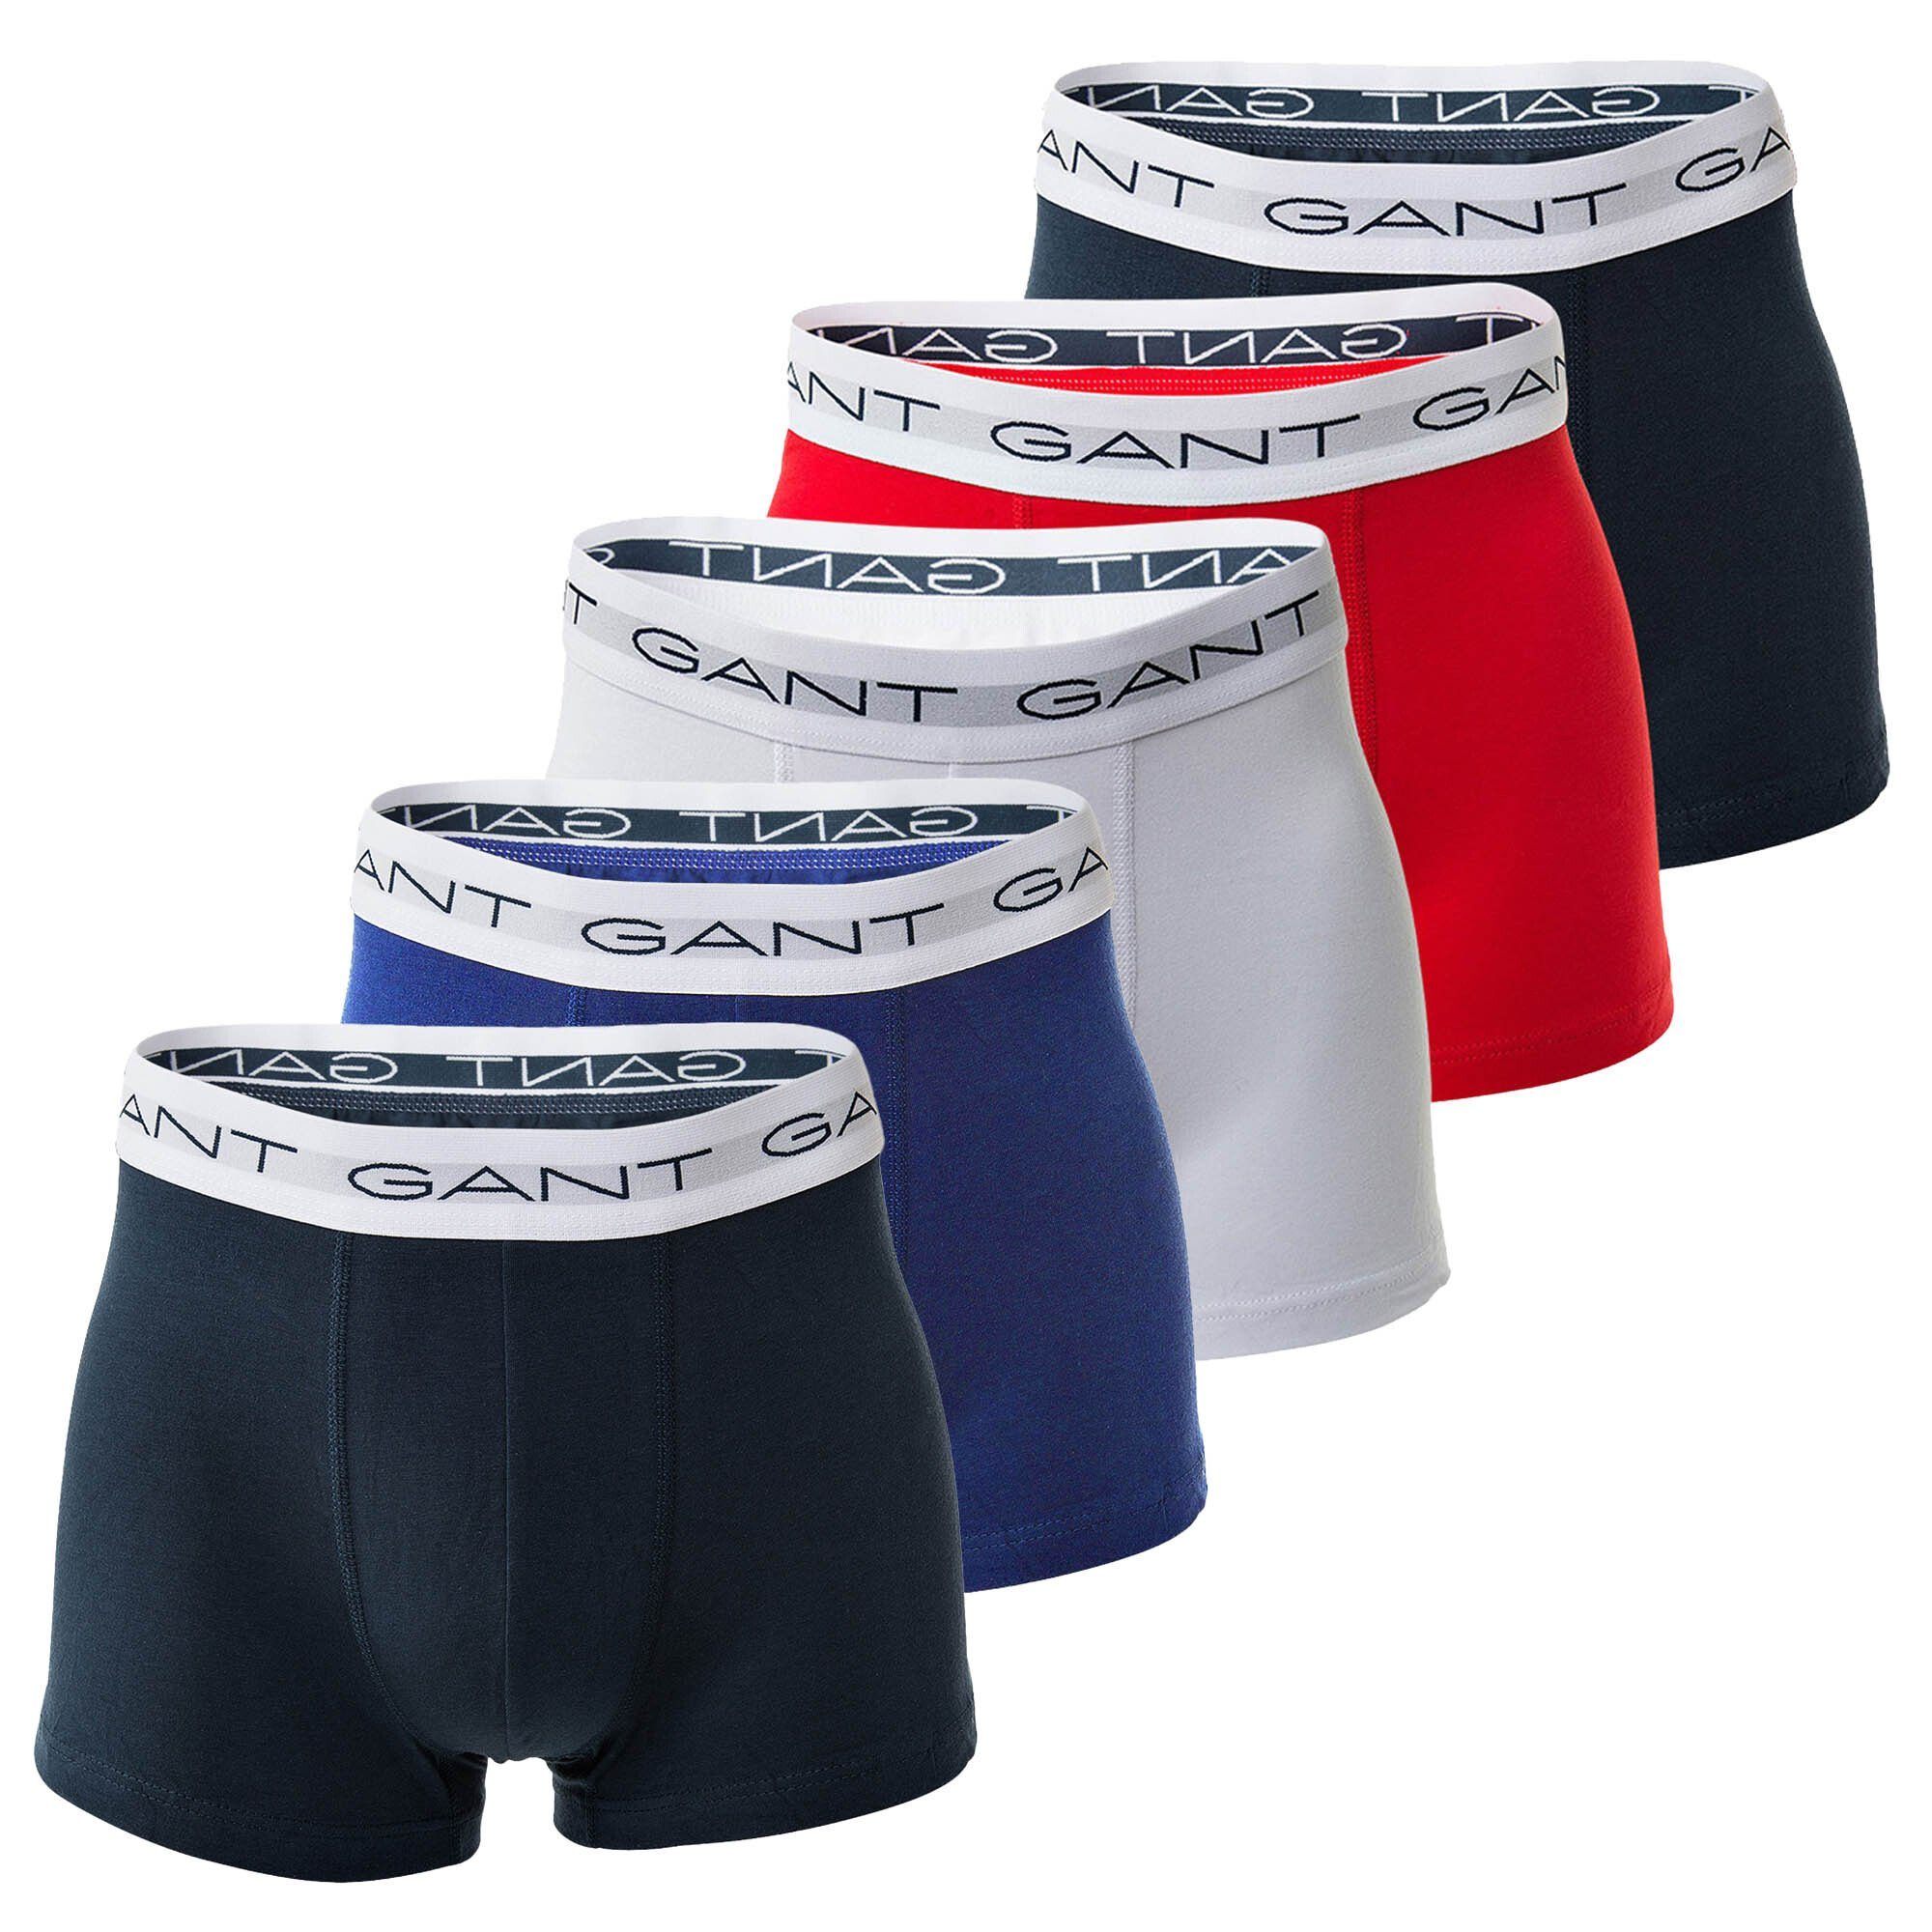 - Gant 5er Basic Boxer Boxershorts, Pack Trunks Mehrfarbig Herren